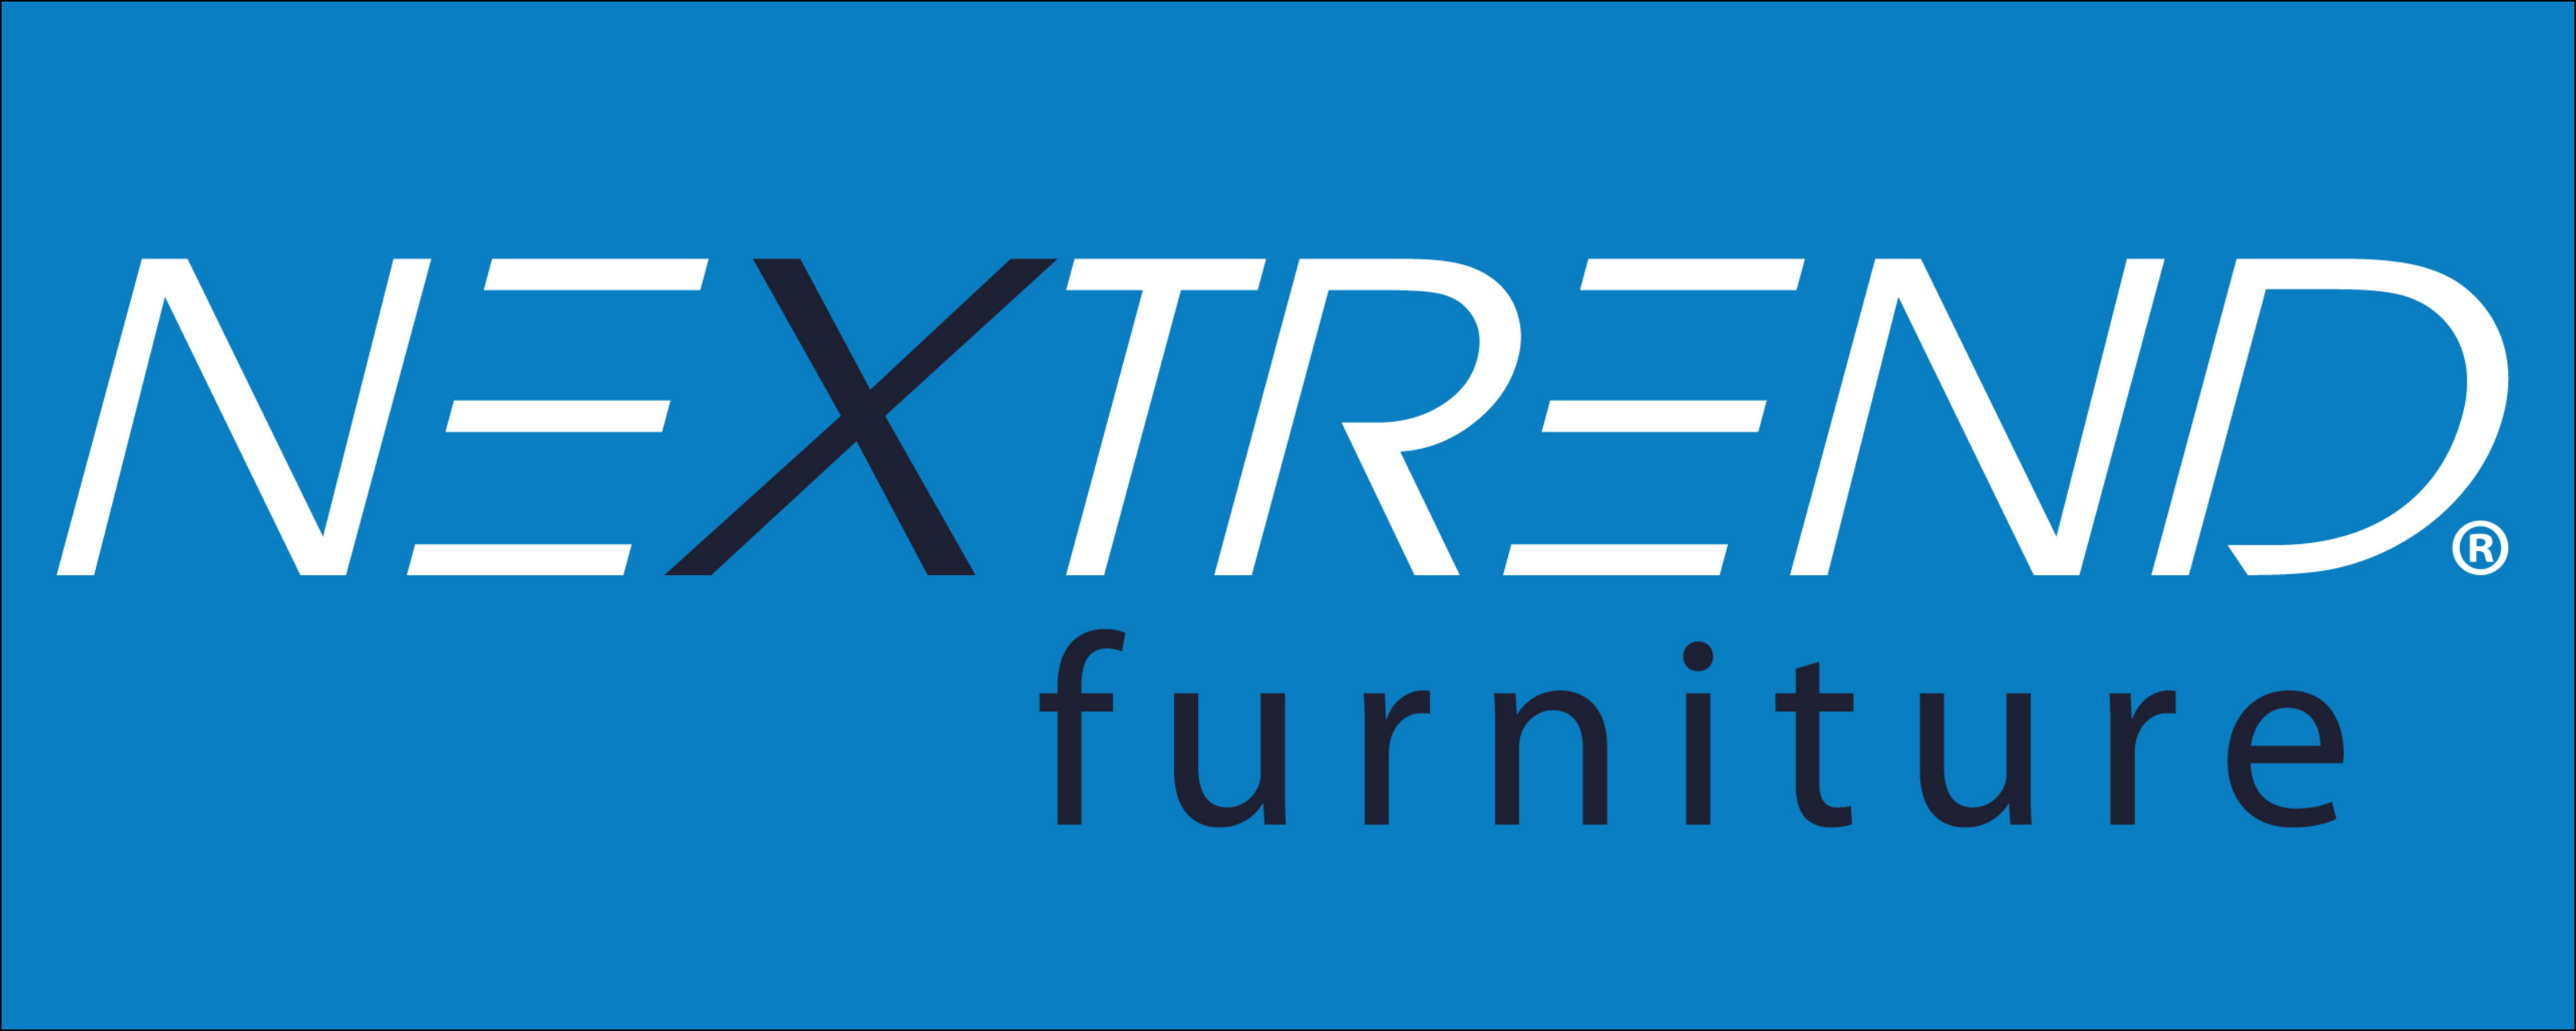 Nextrend Furniture